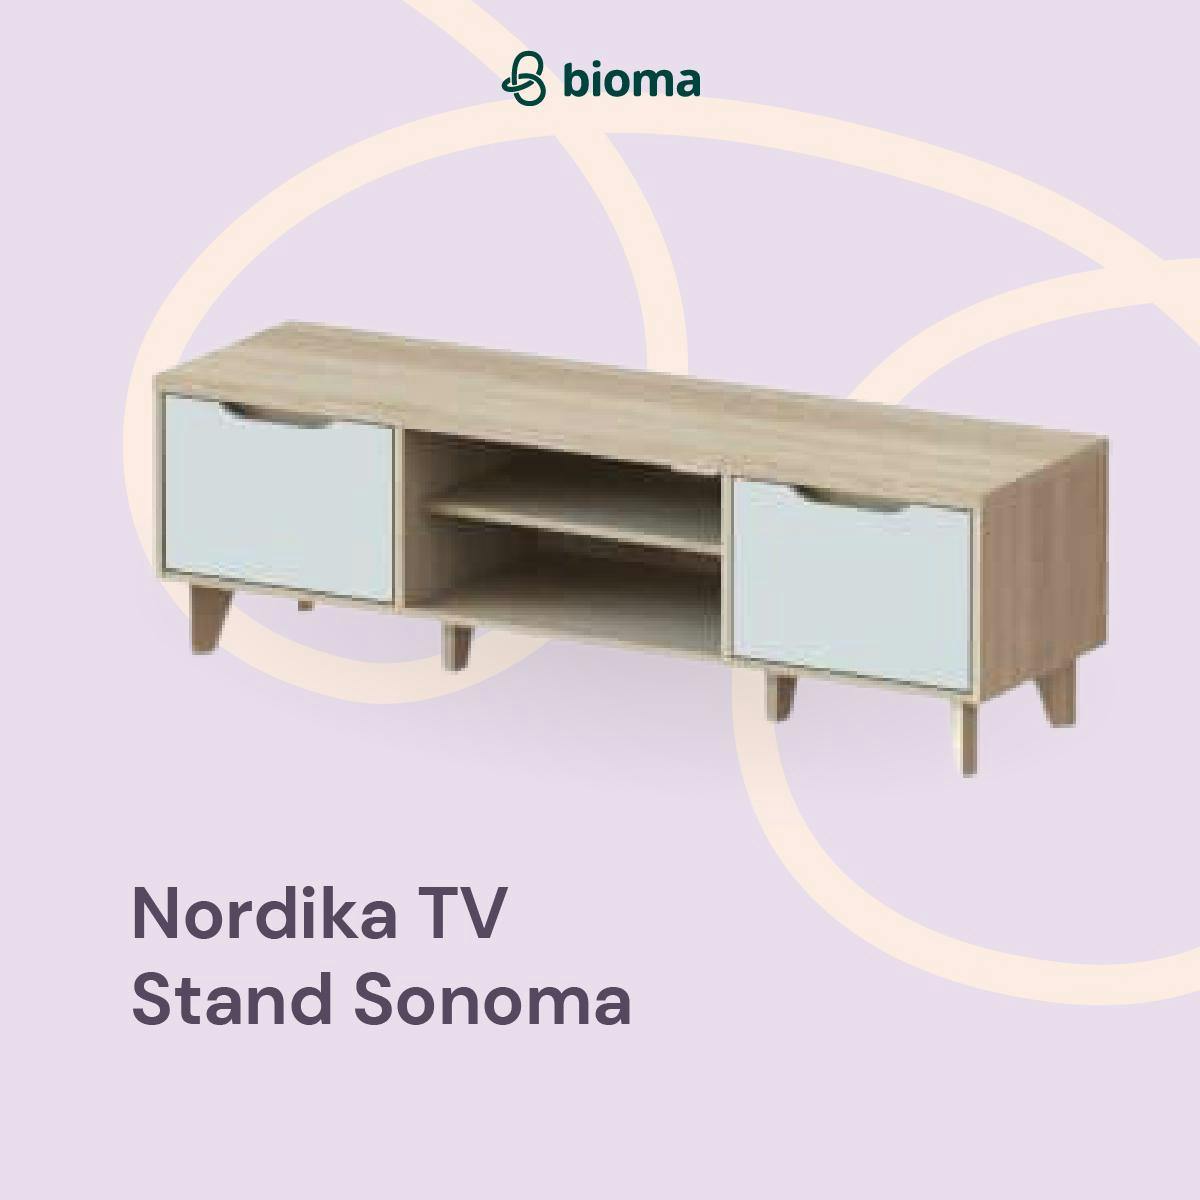 Nordika TV Stand Sonoma